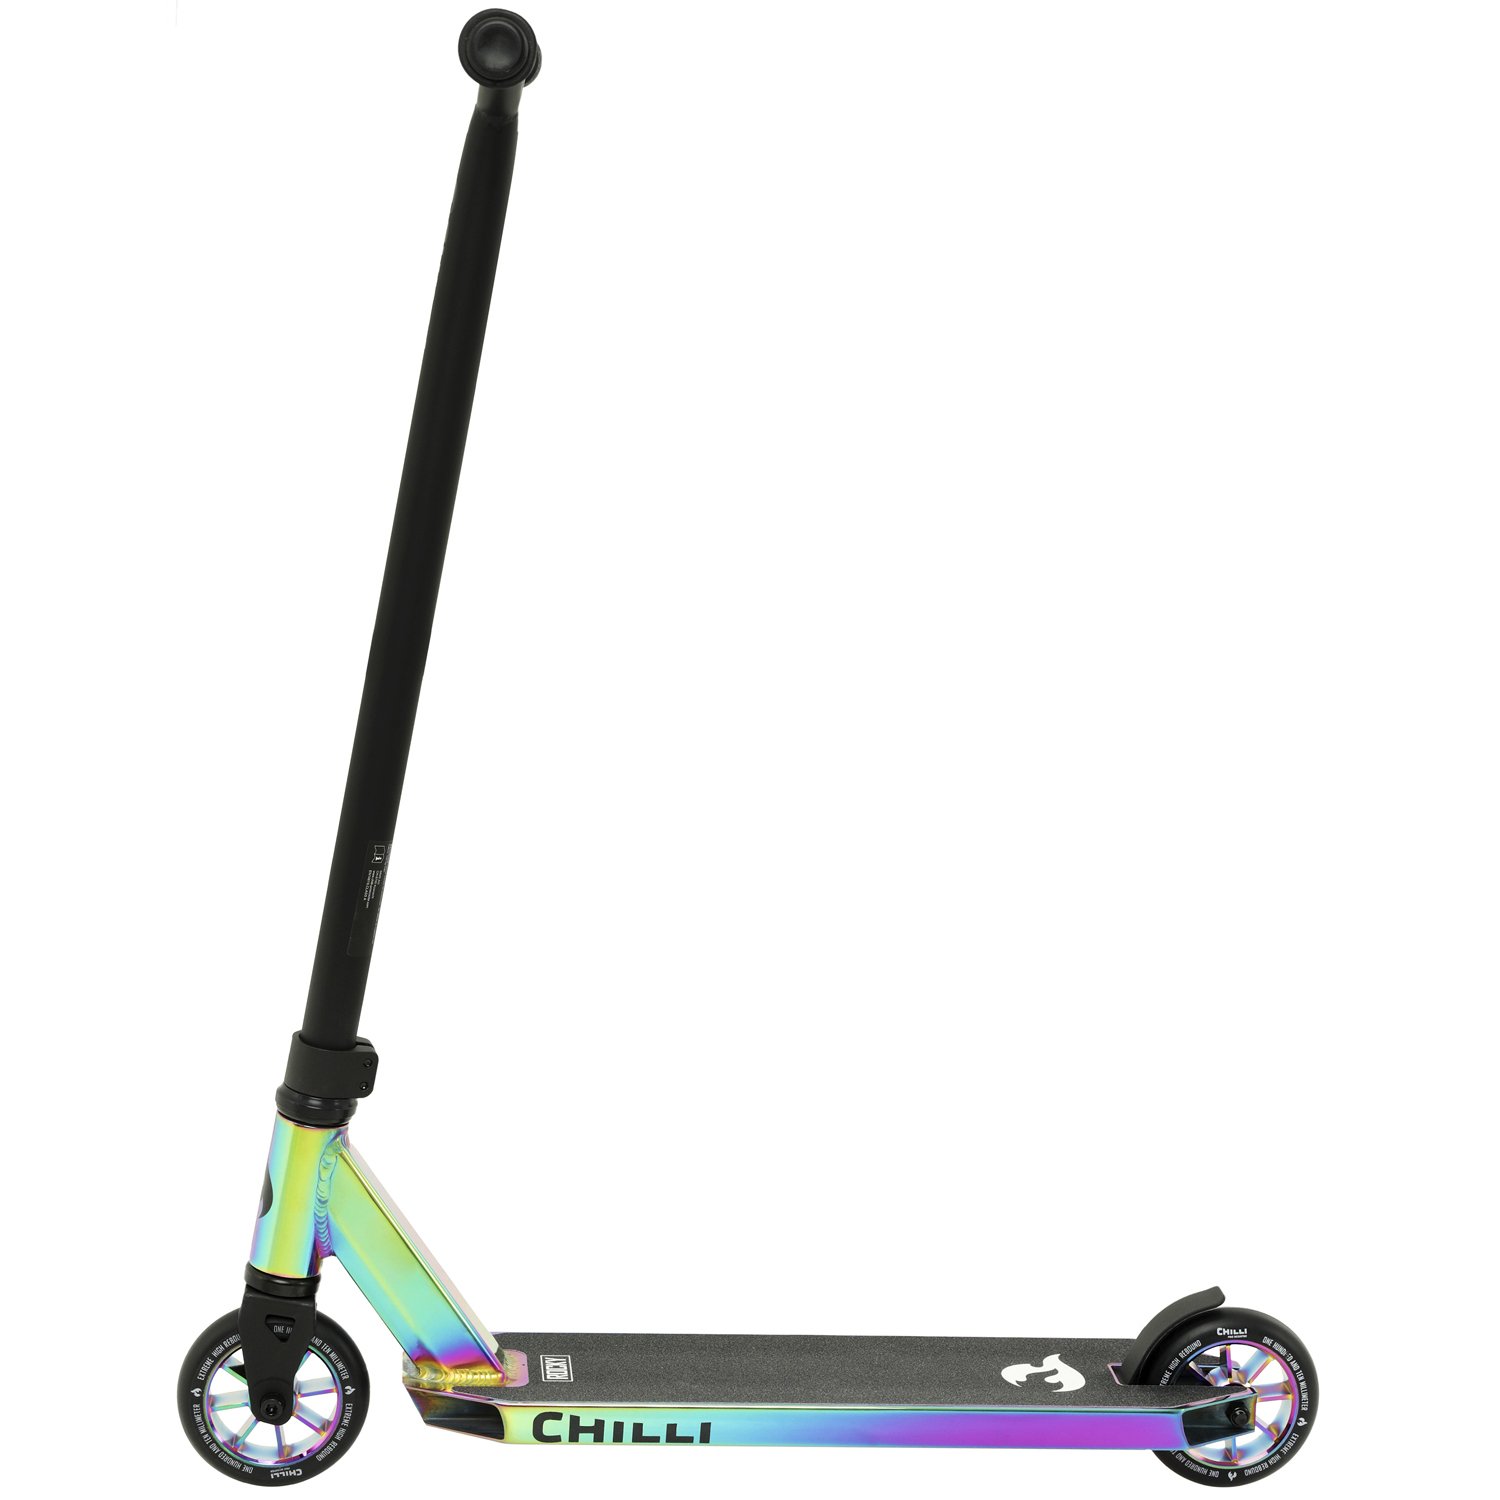 Самокат Chilli Pro Scooter Rock, взрослый, трюковый, 2022, фиолетовый, 118-6 детский велосипед merida matts j 20 eco год 2022 серебристый фиолетовый